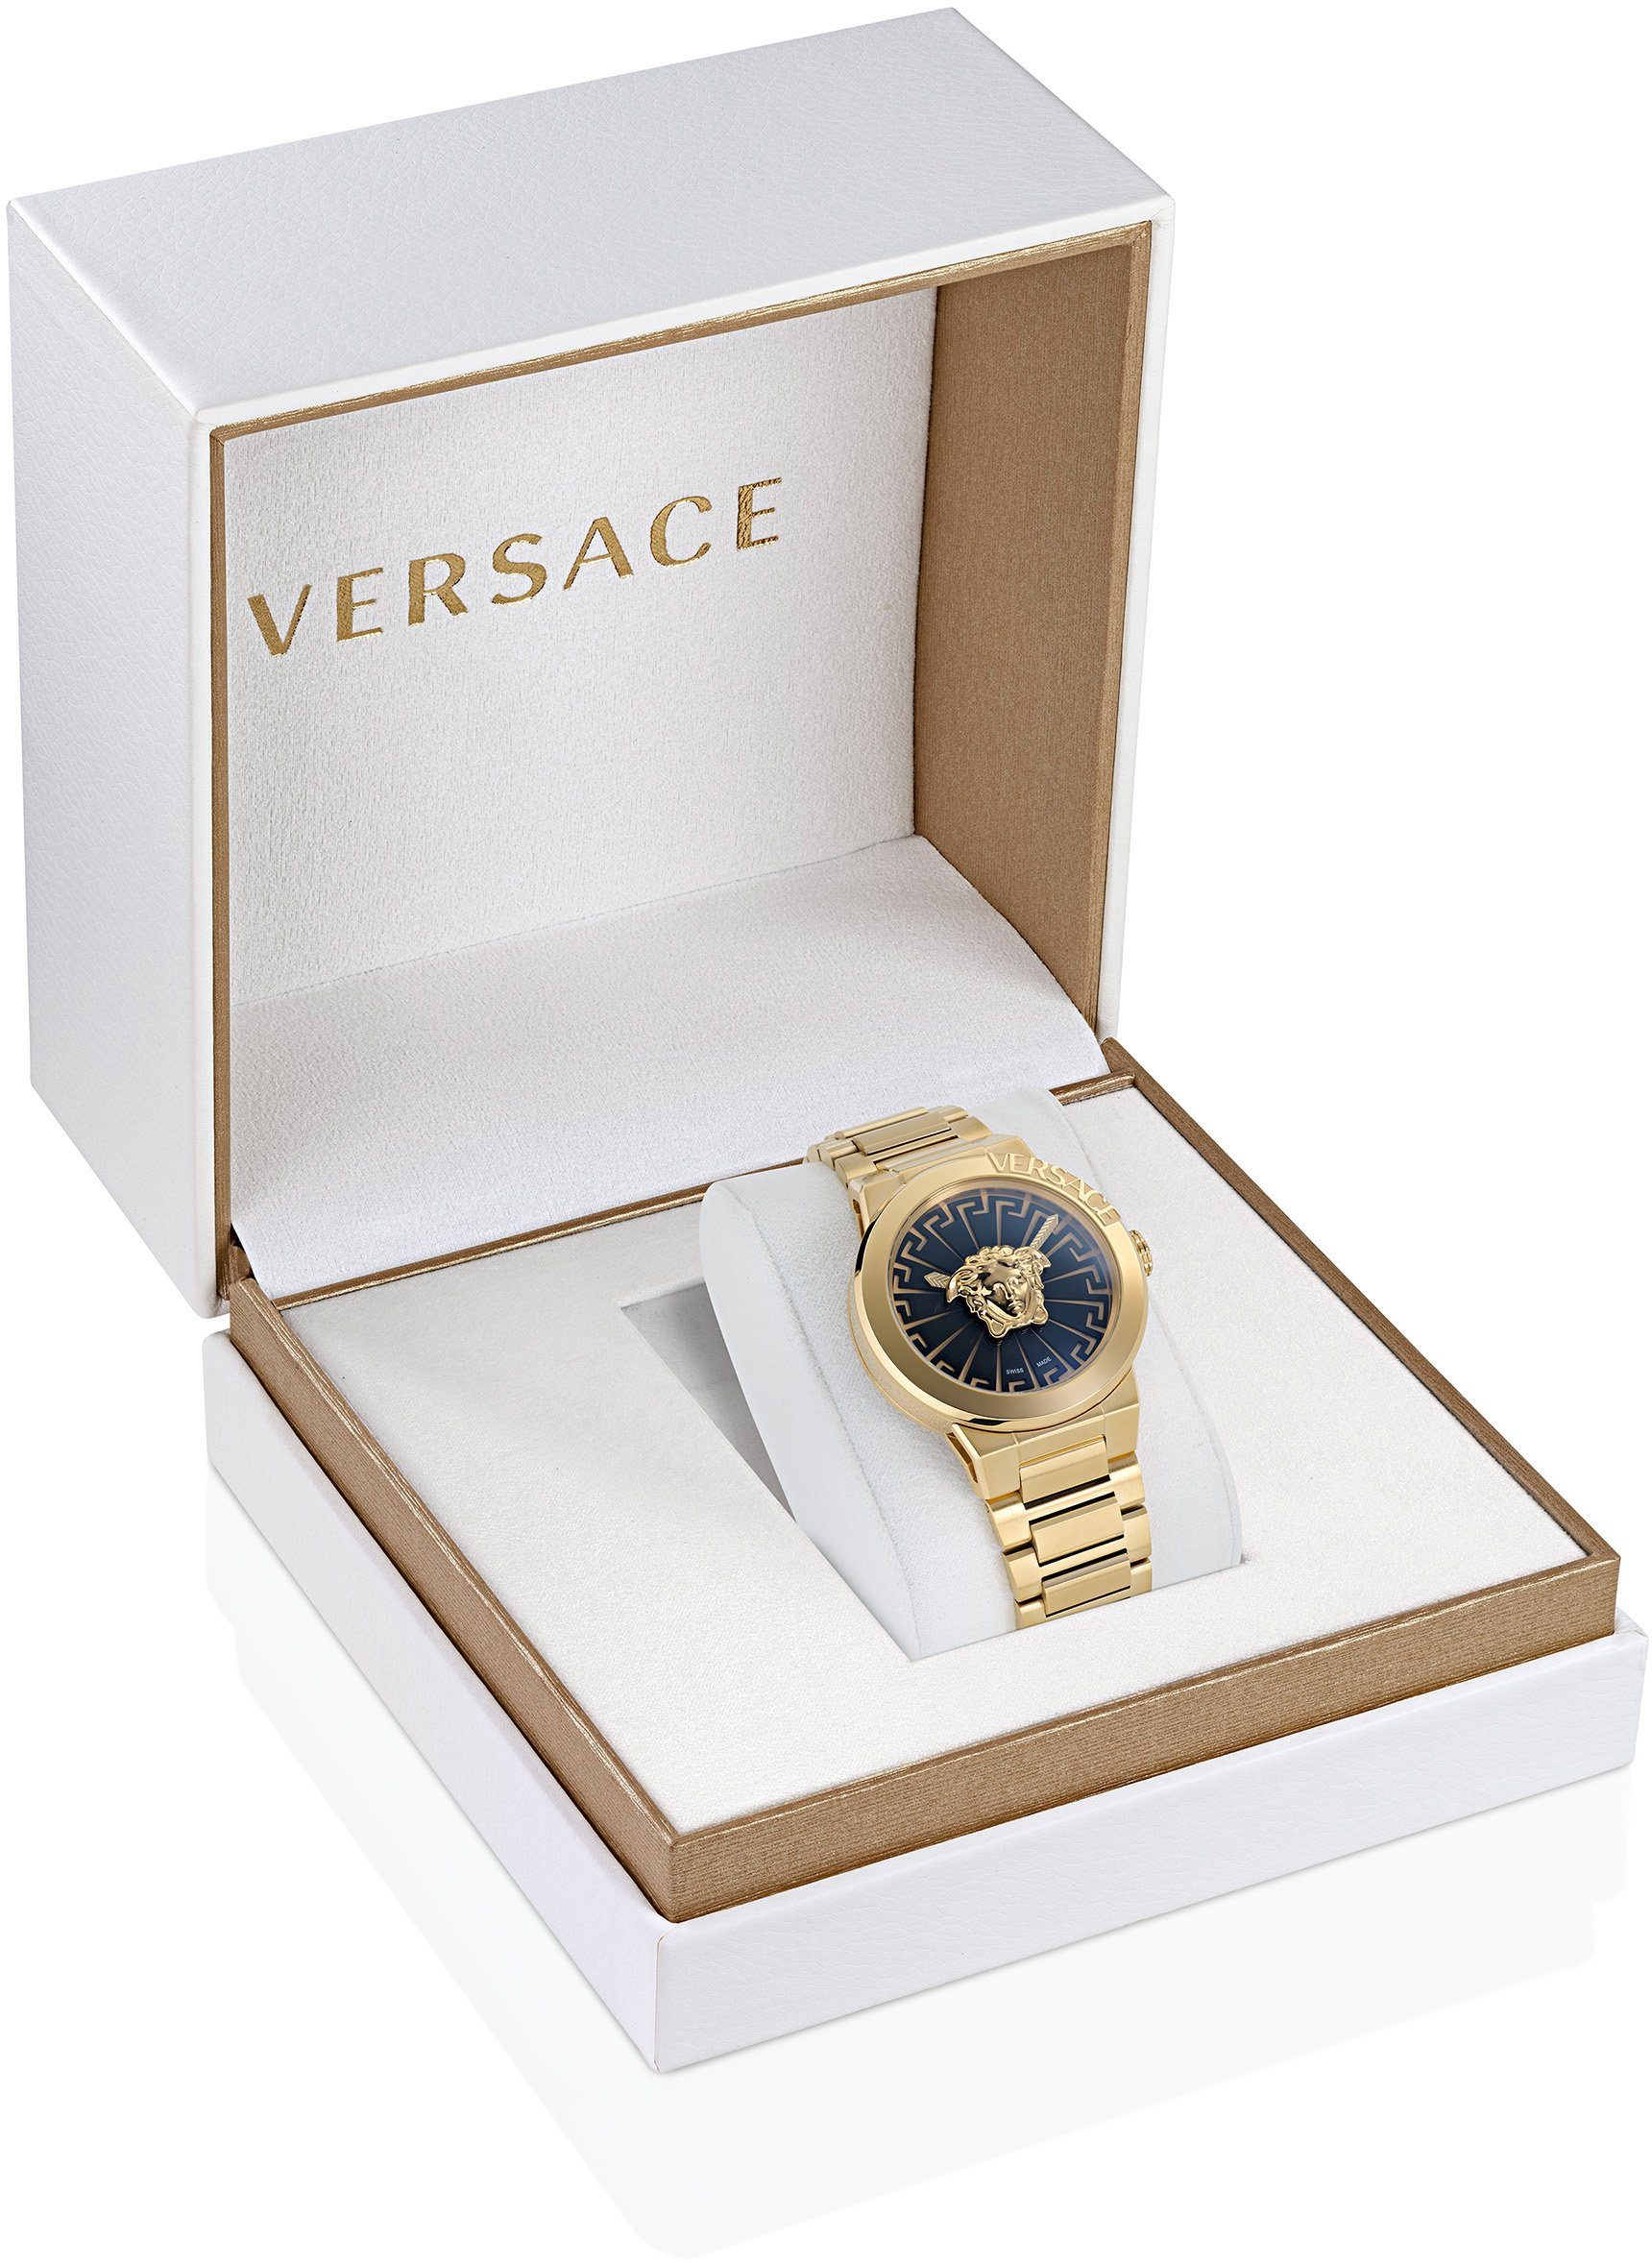 VE3F00522 INFINITE, Uhr Versace MEDUSA Schweizer gold